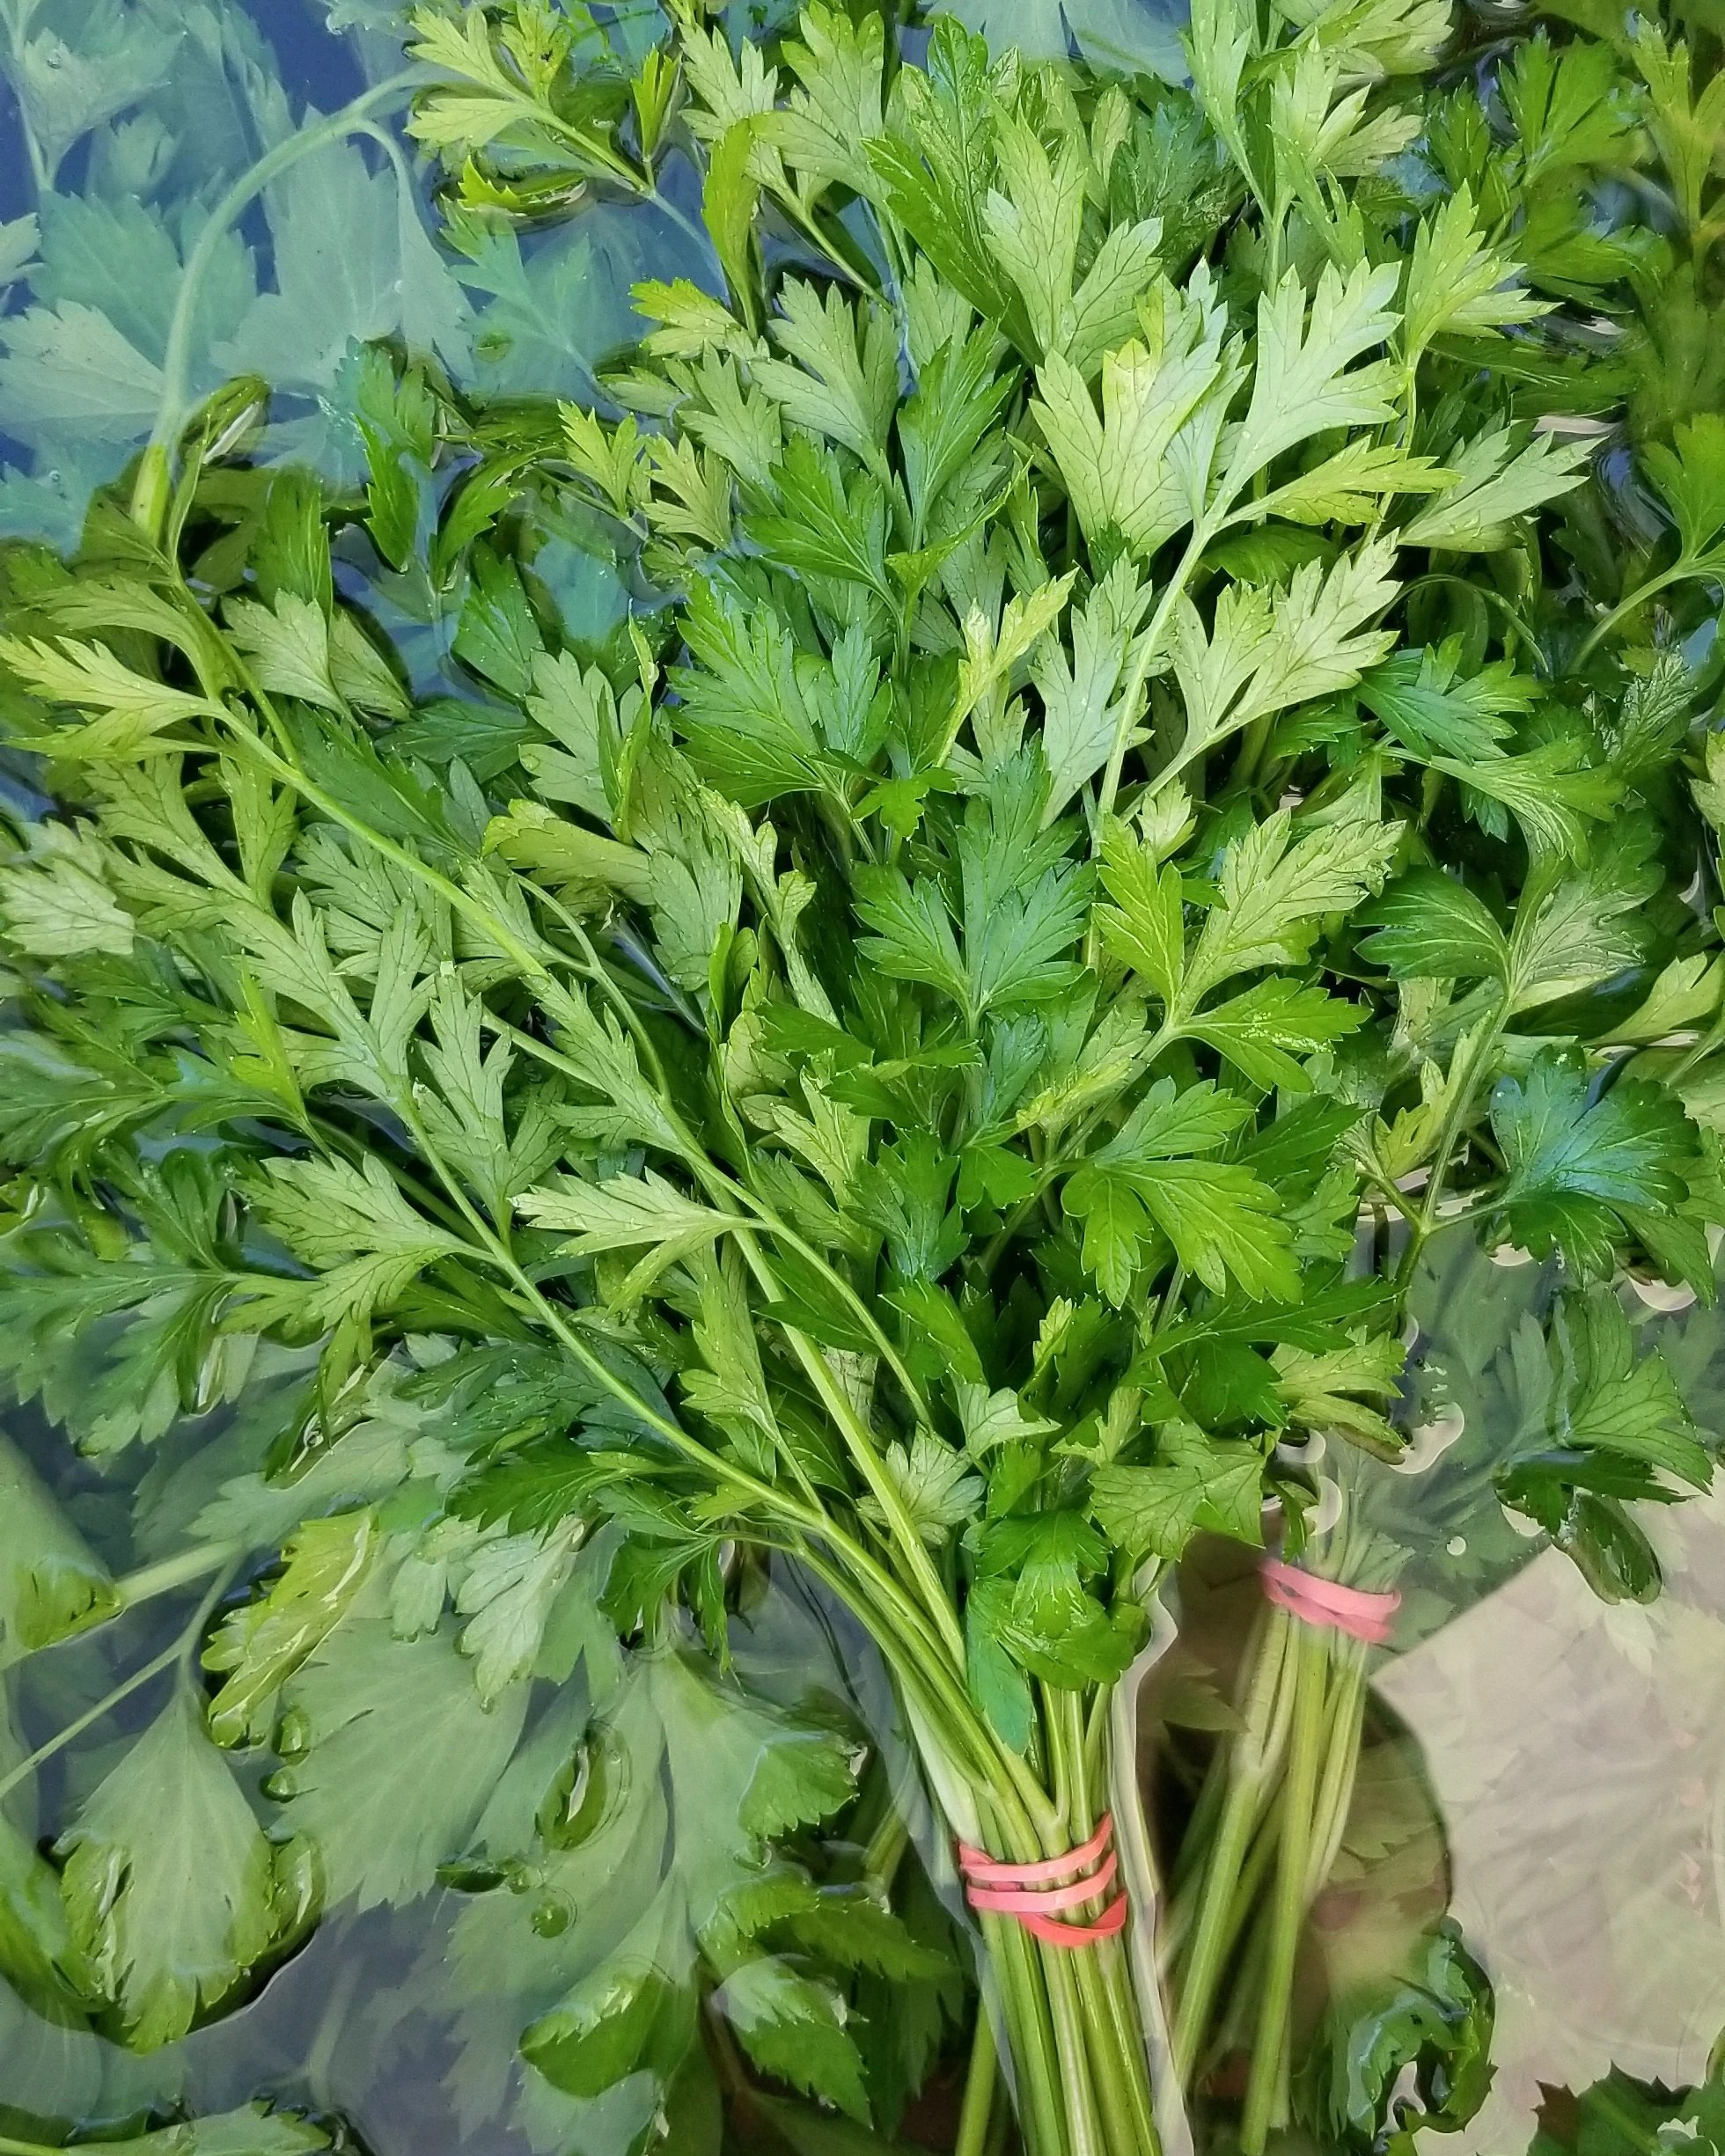 parsley.jpg